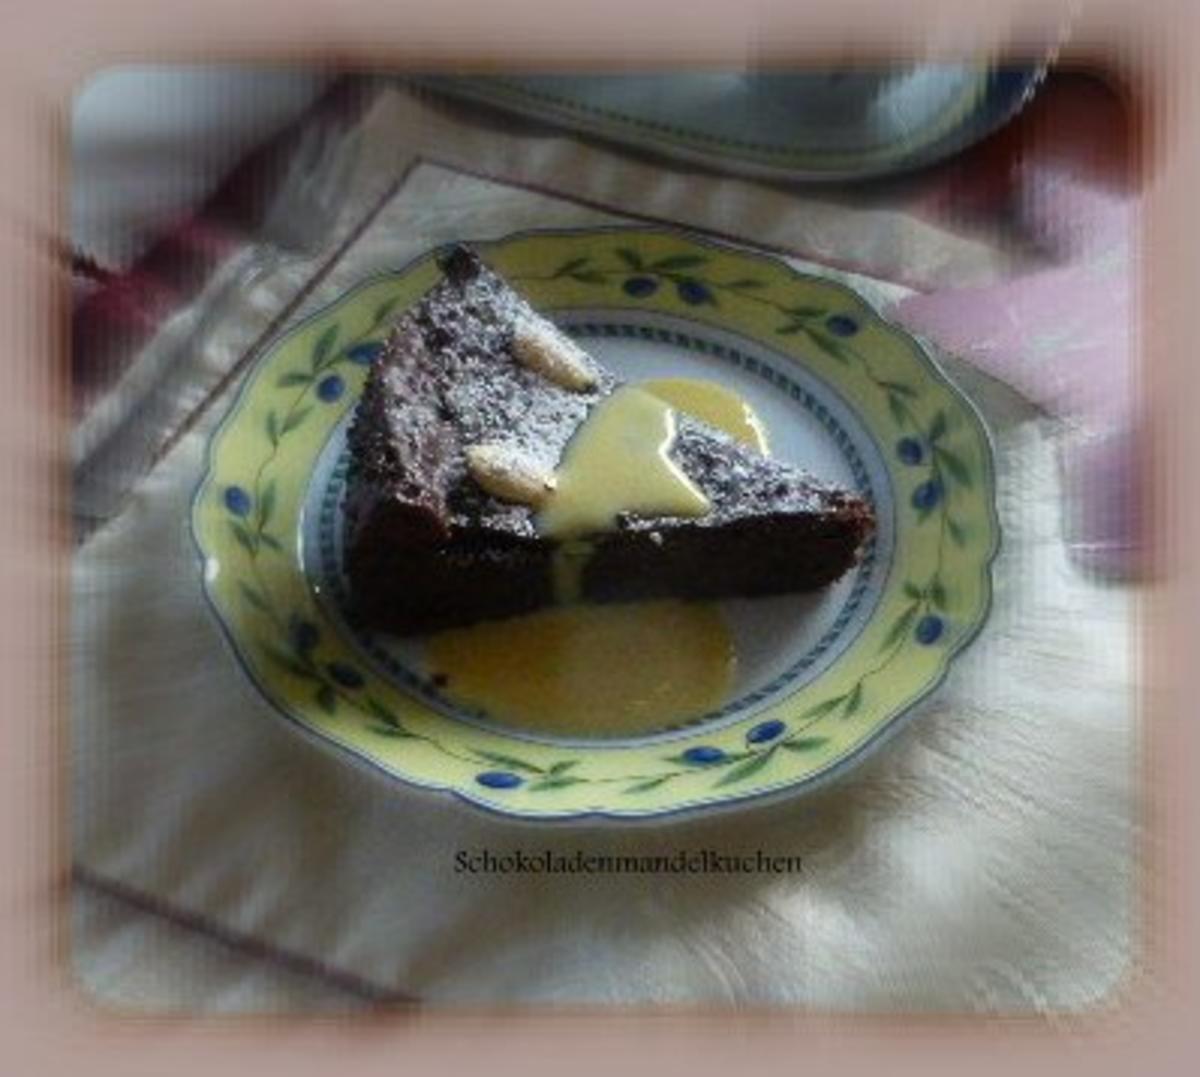 Schokoladen-Mandel-Kuchen mit Vanillesauce - Rezept - Bild Nr. 4